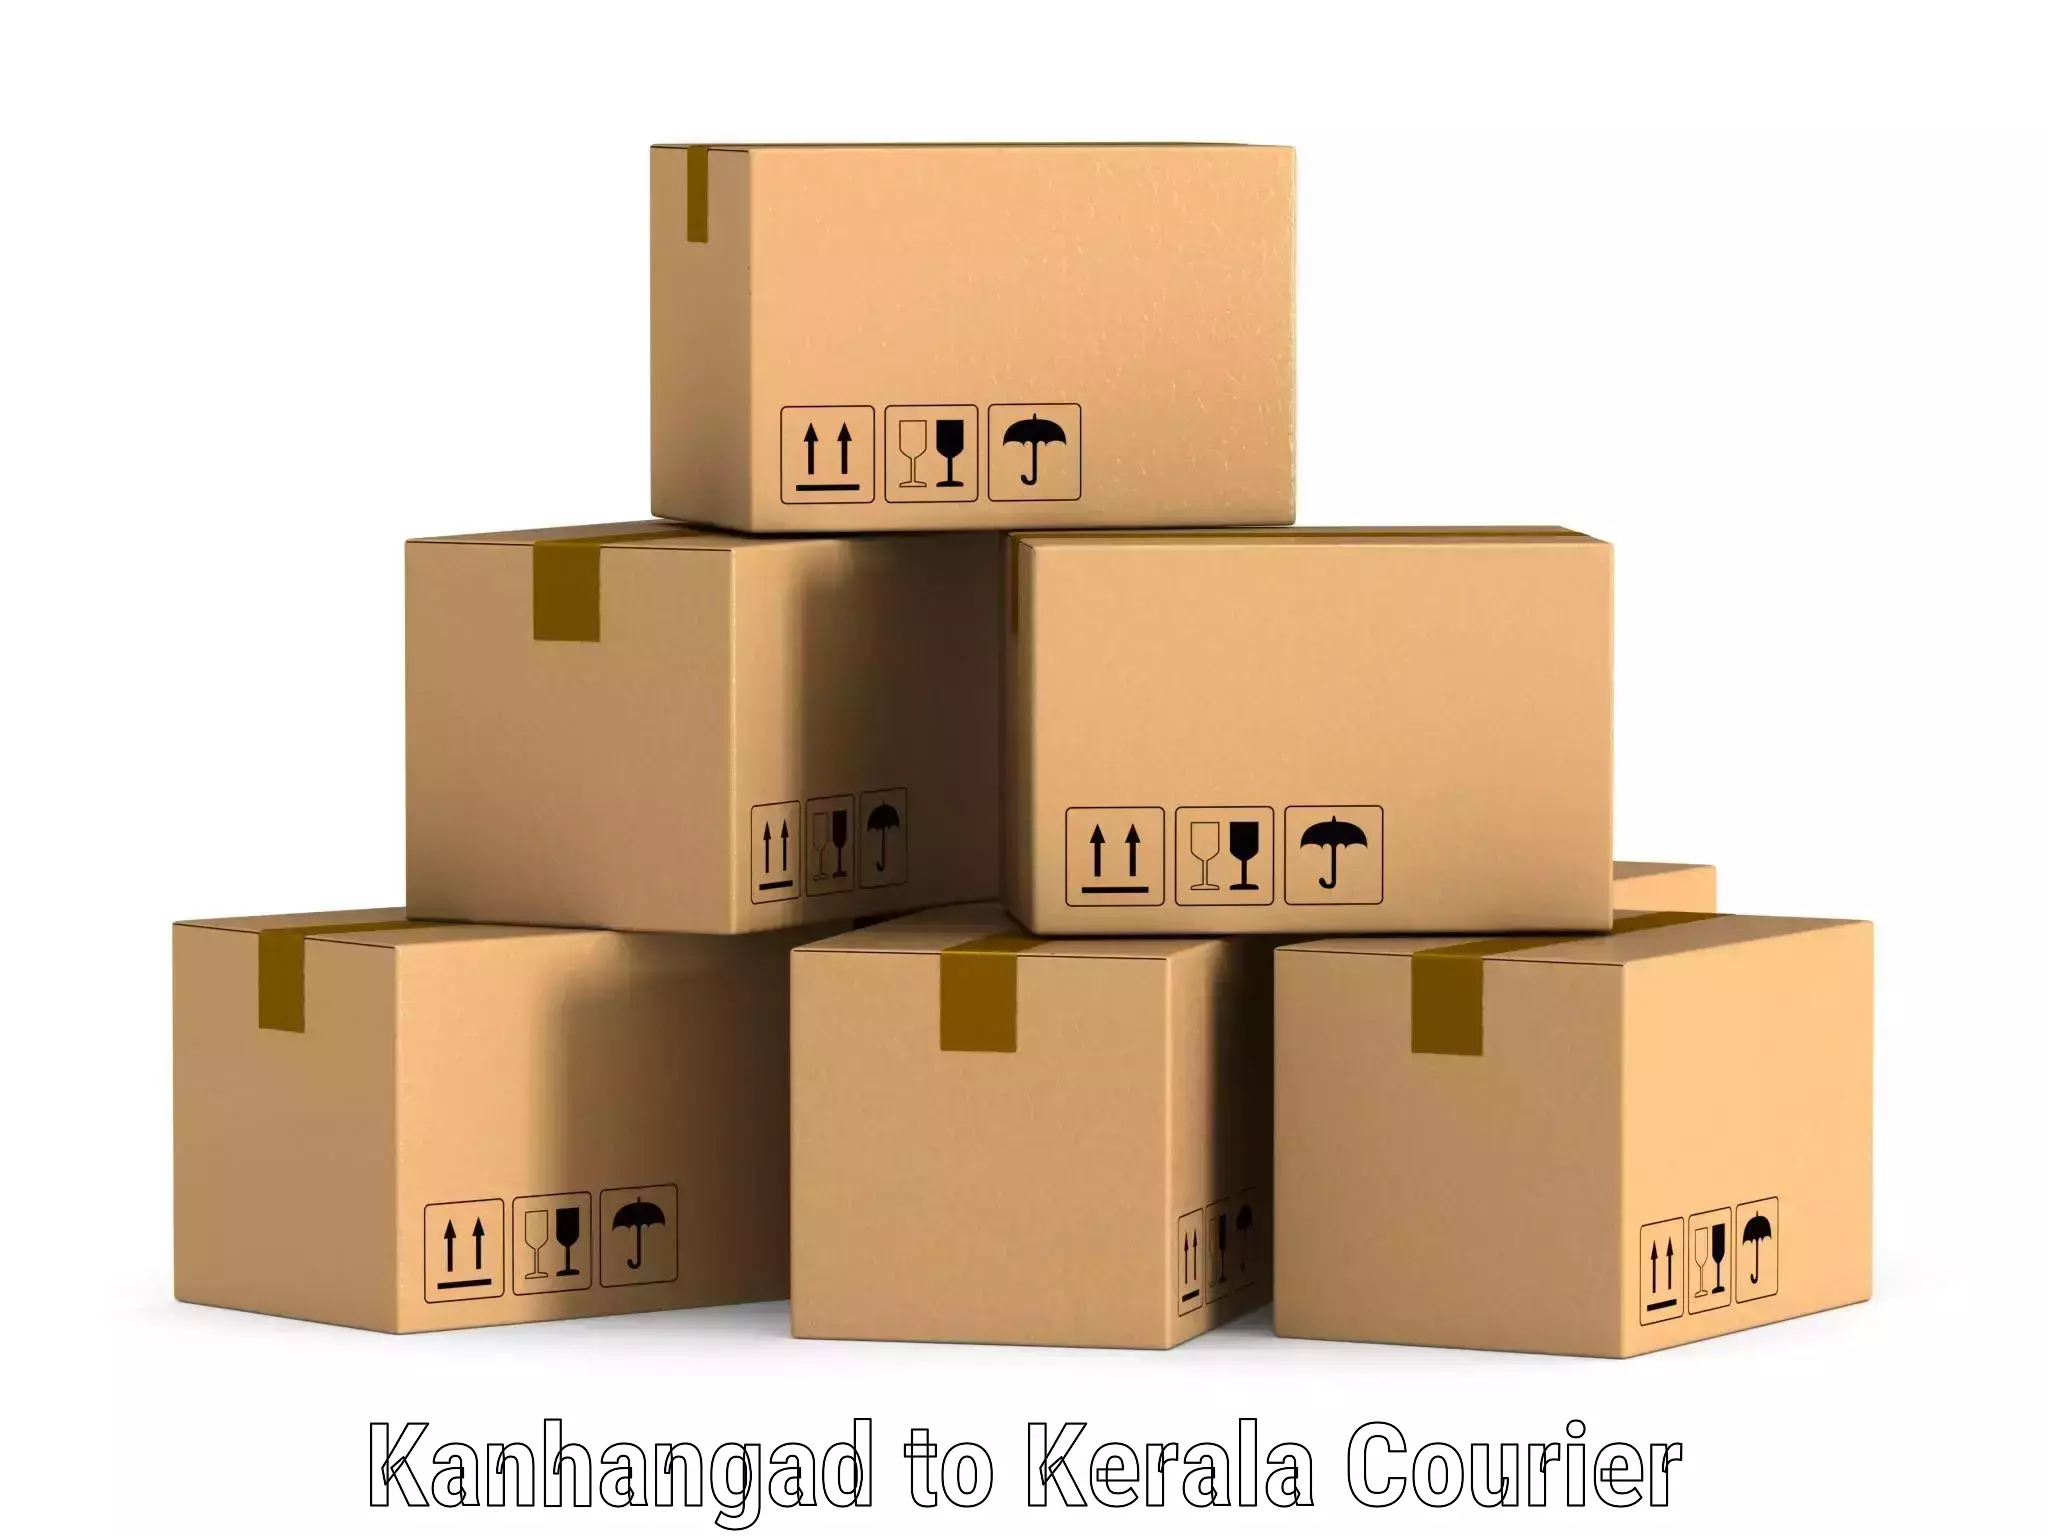 Local courier options Kanhangad to Kottarakkara